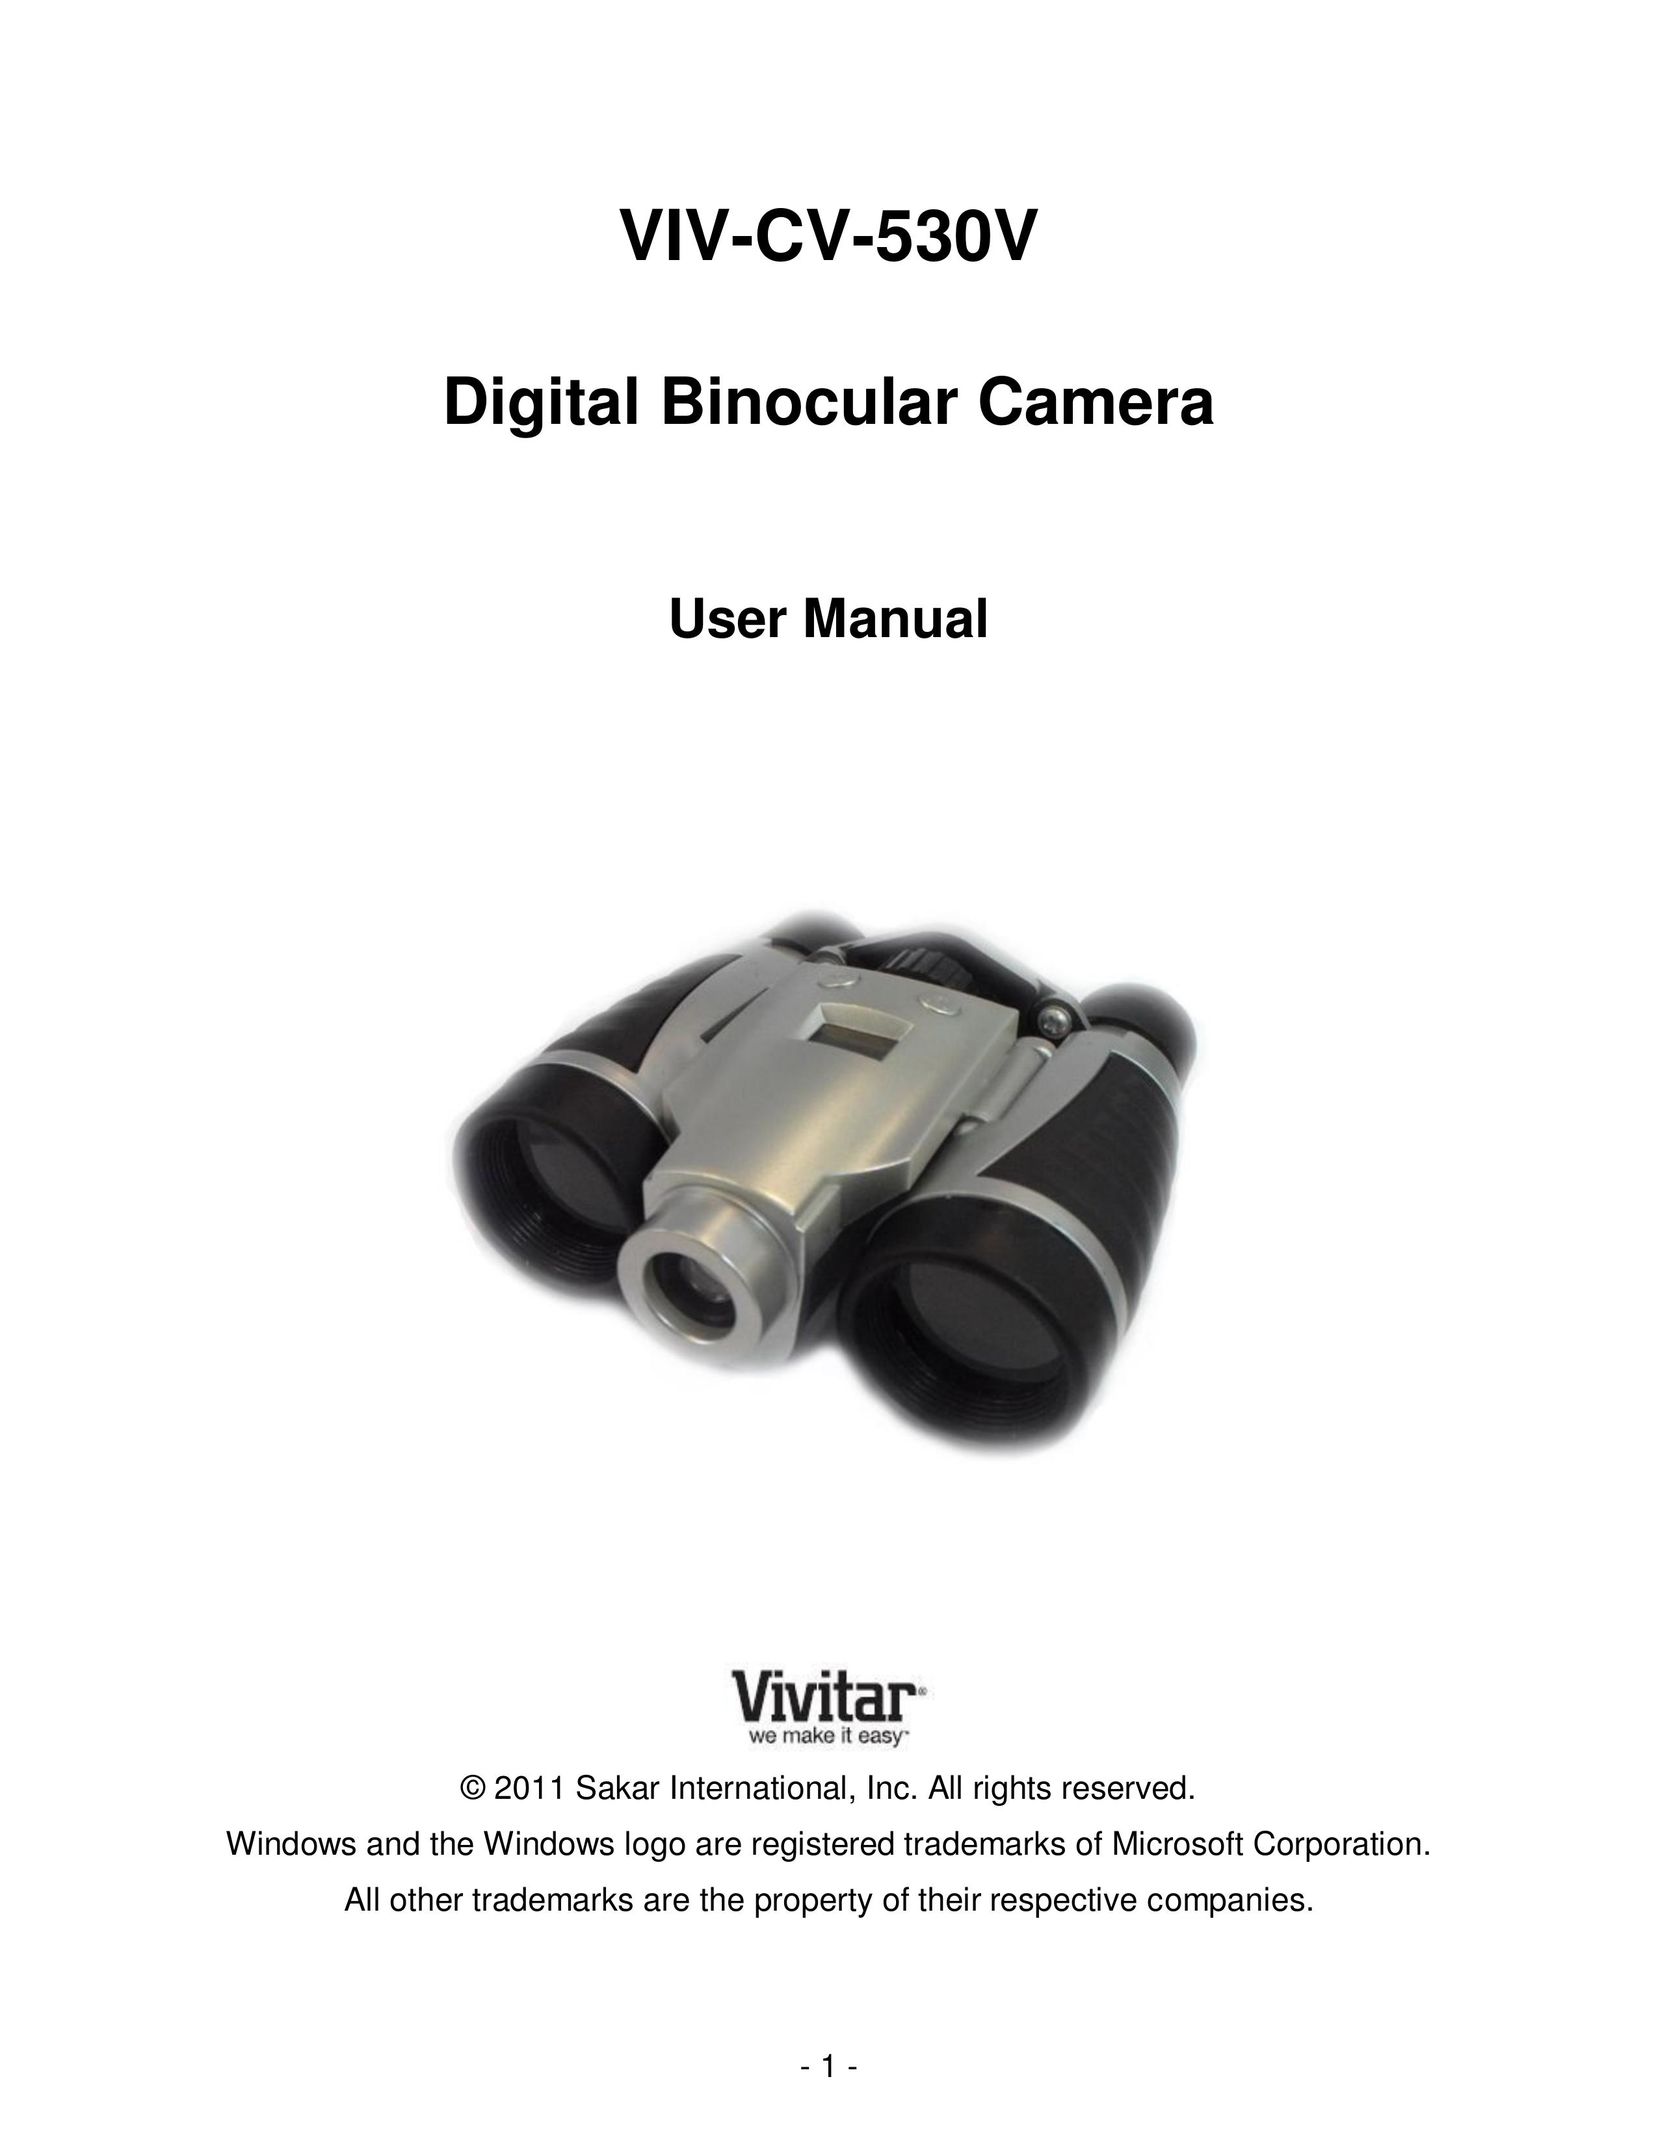 Vivitar viv-cv-530v Binoculars User Manual